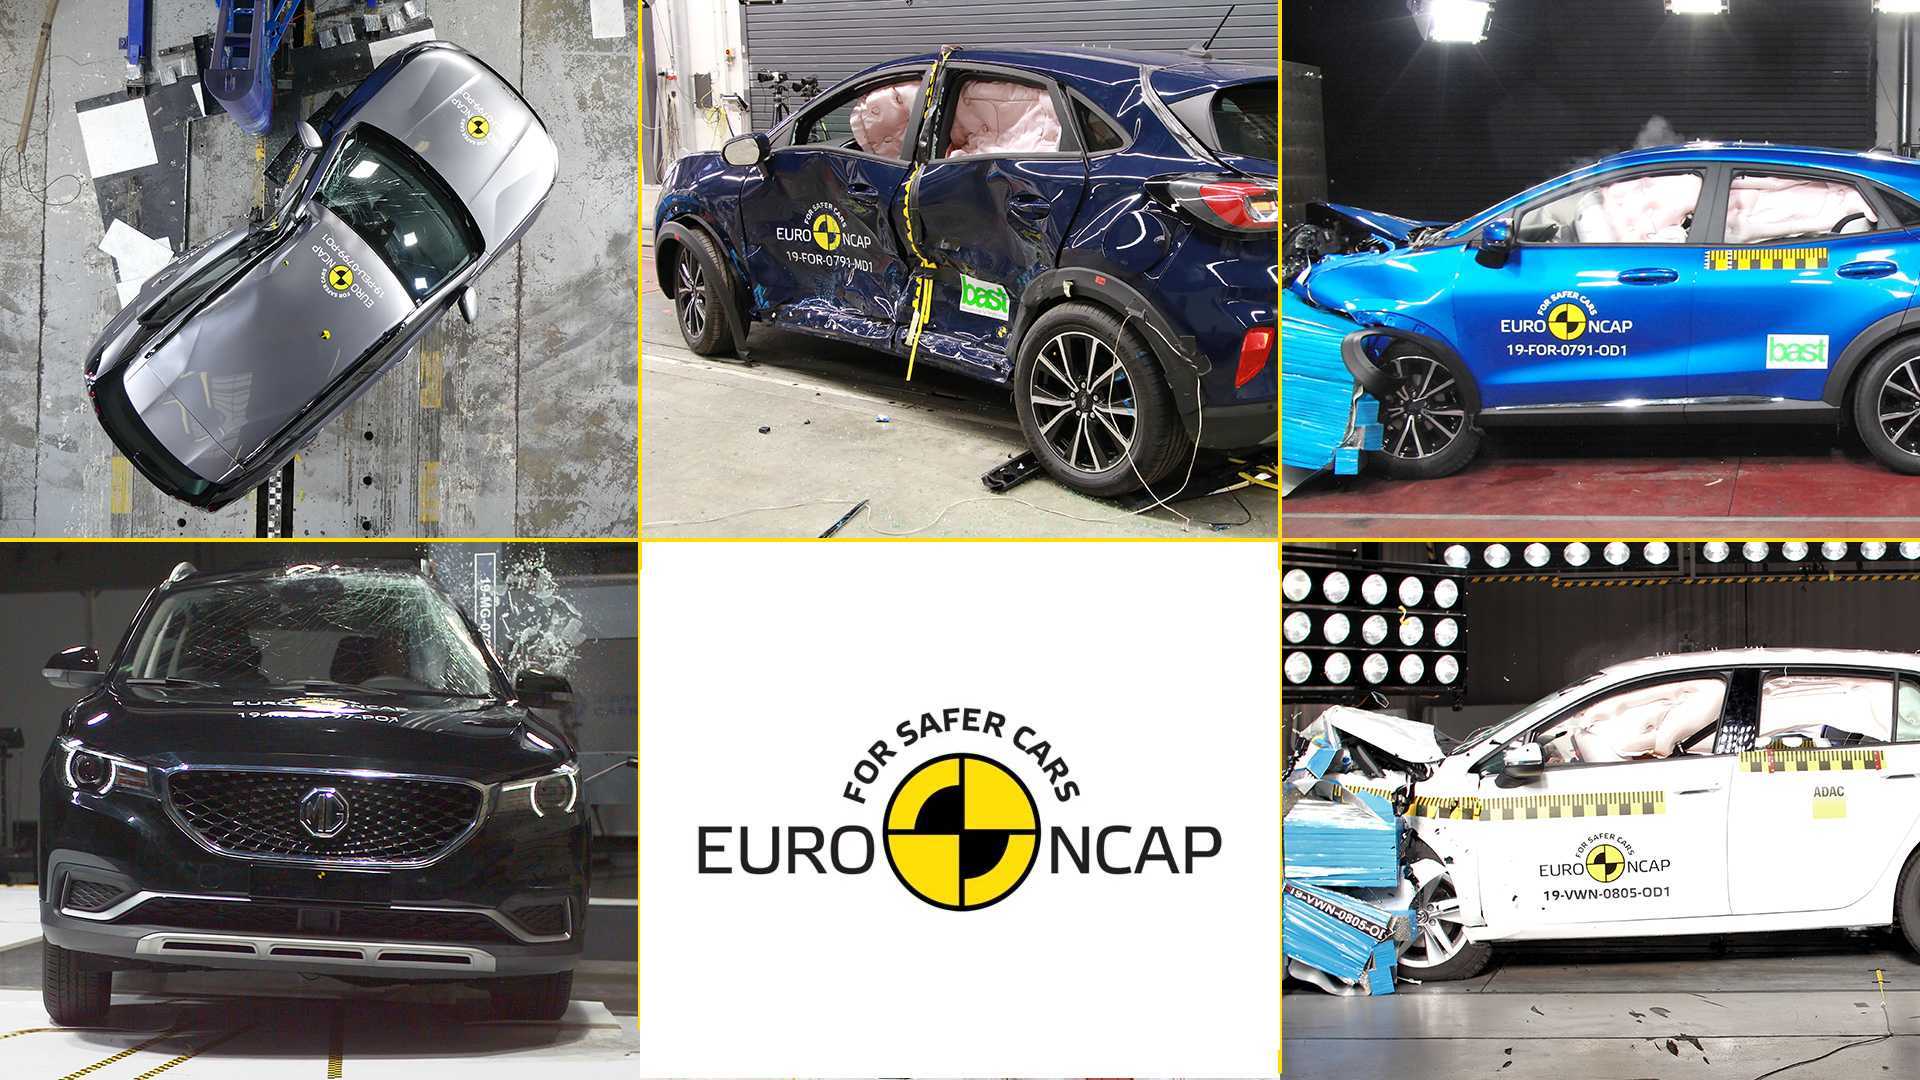 Китайские машины часто проходят краш-тест C-NCAP, получая в итоге очень хорошие оценки Другой рейтинг - Euro NCAP - показывает автомобили, заслужившие крайне низкие баллы за проверку